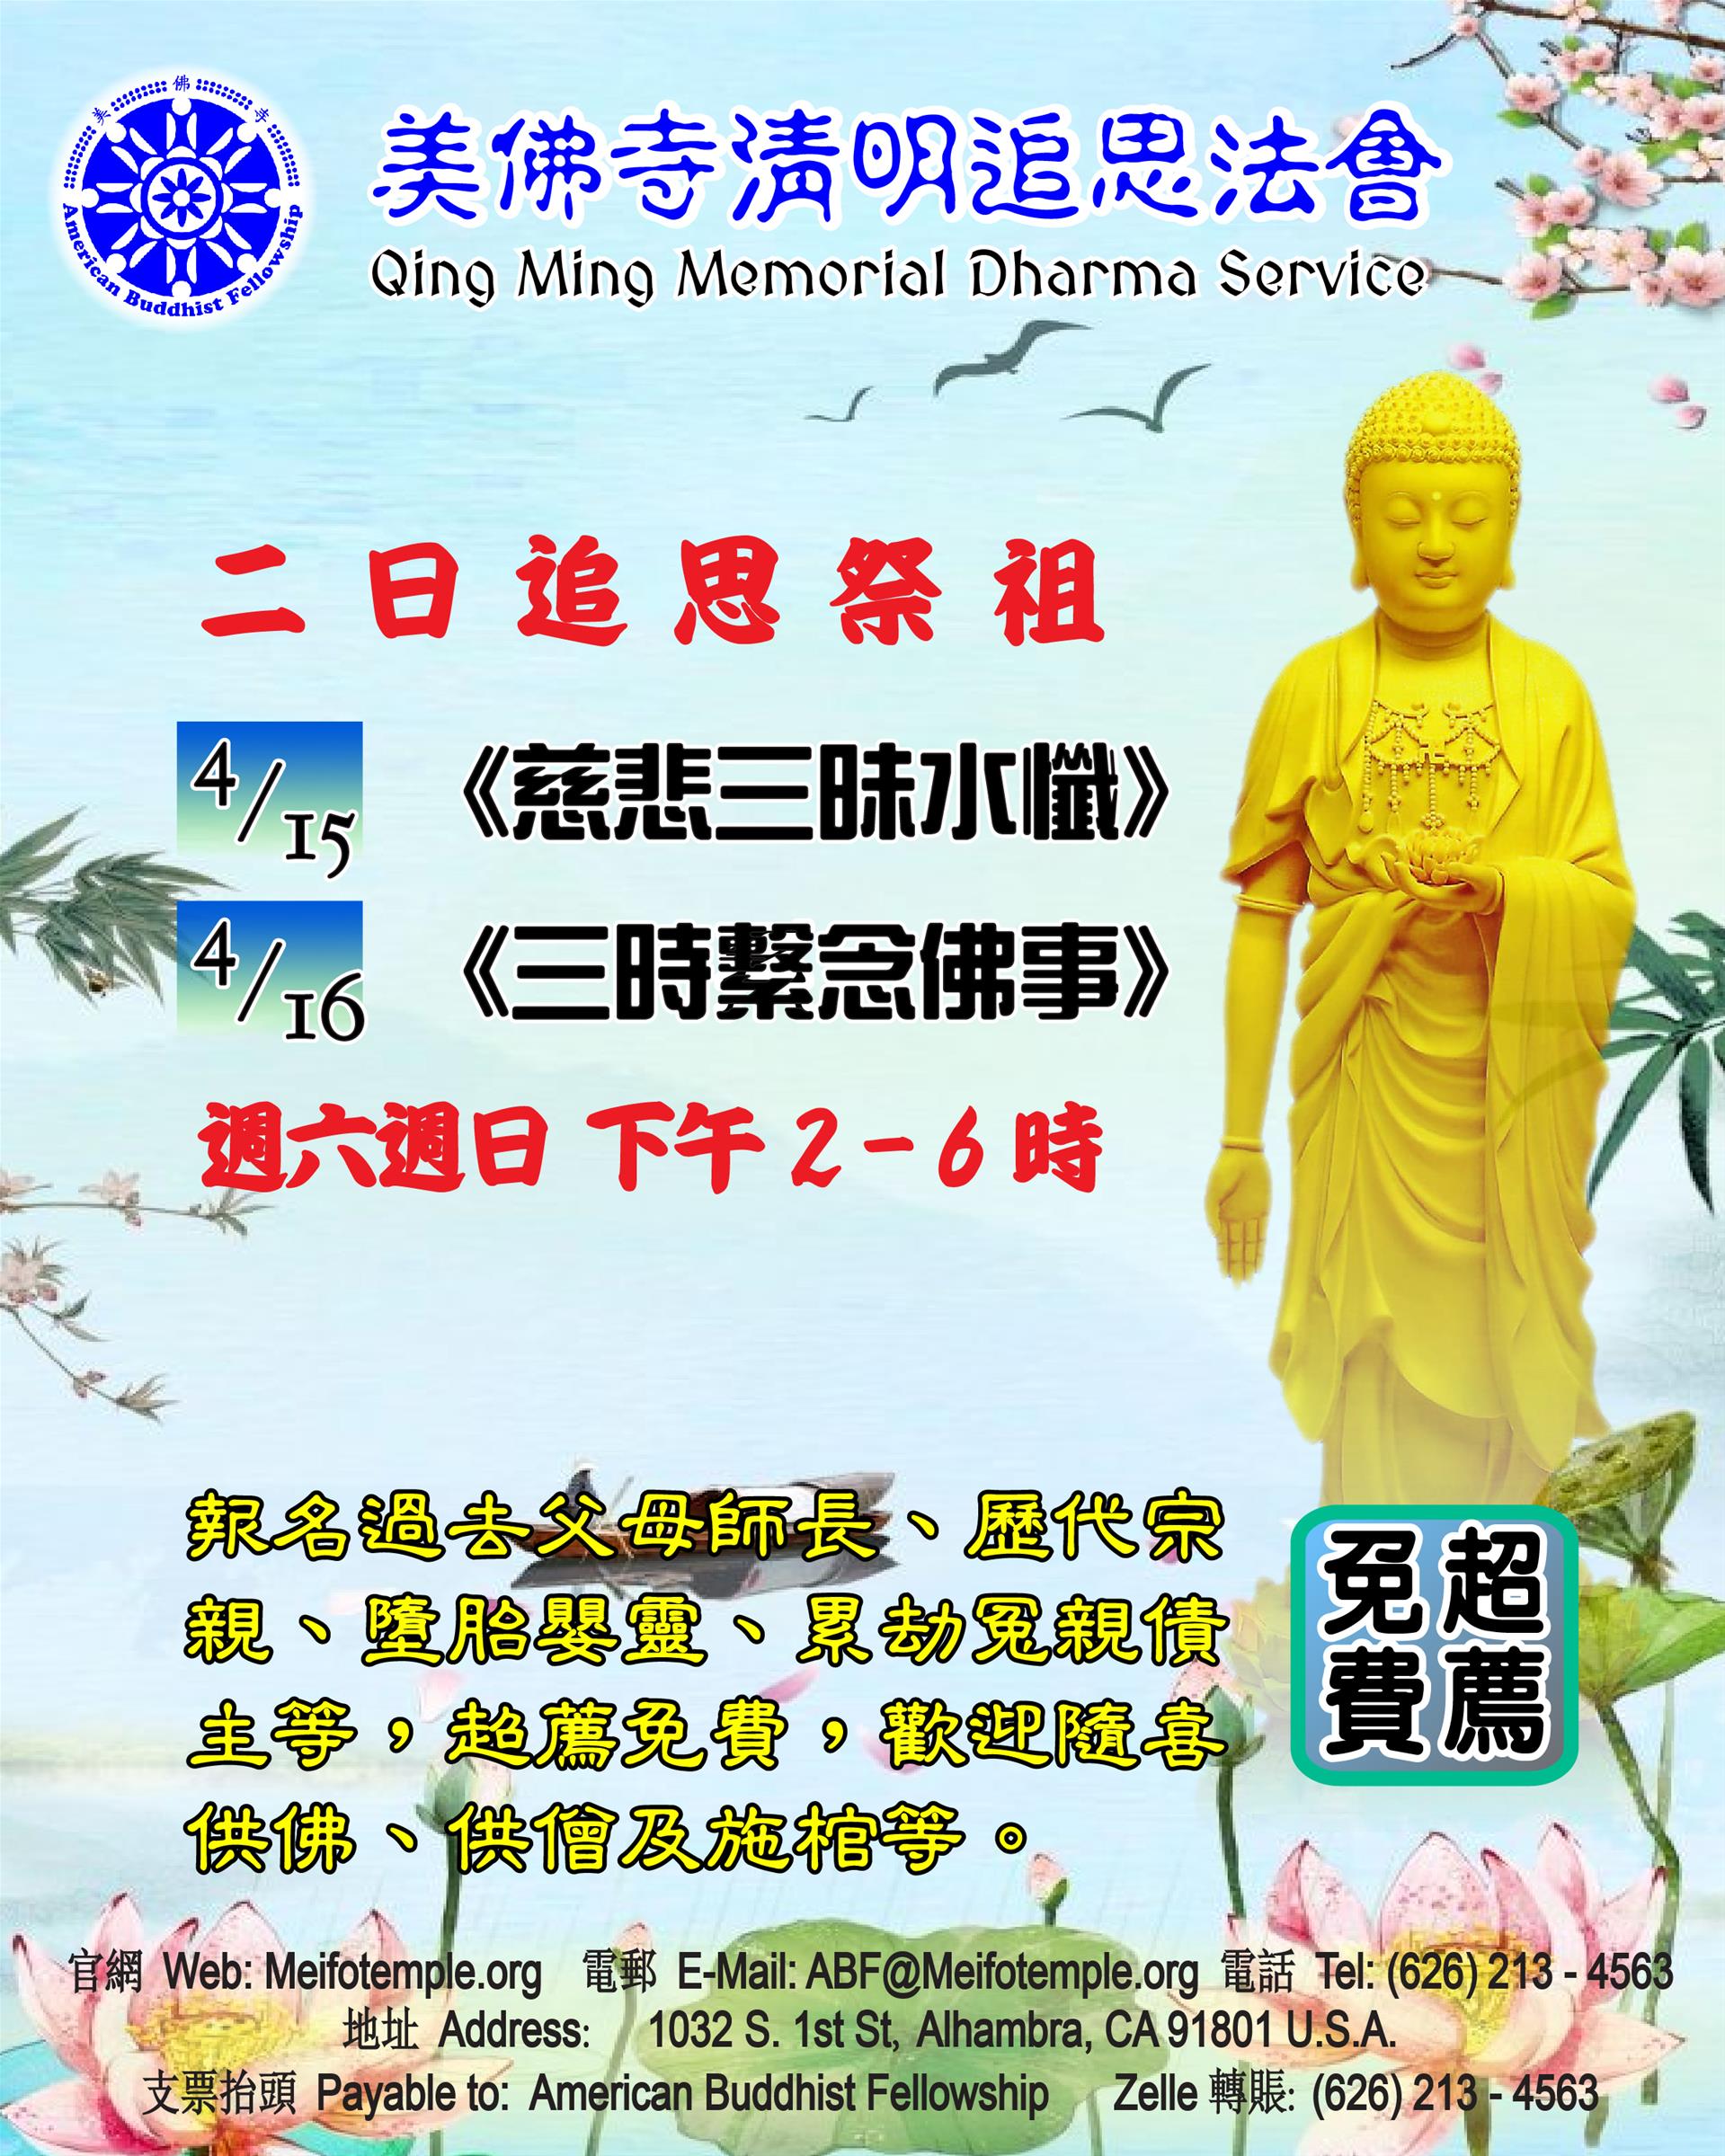 【生活】 美佛寺清明追思法會通啟 Qingming Dharma Service Notice -- 美佛寺性仁法師 Venerable Xingren